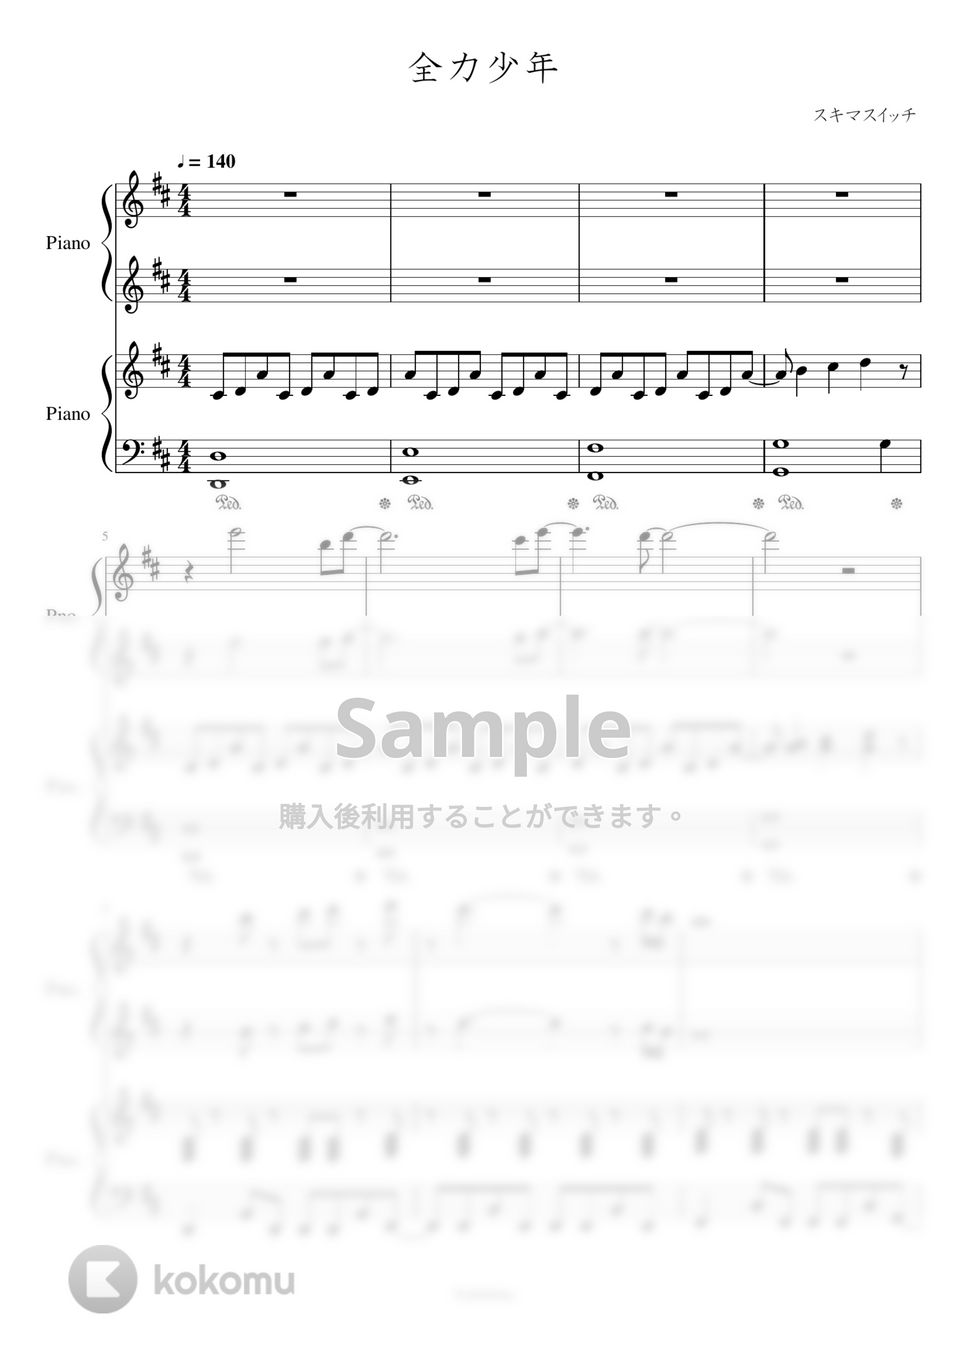 スキマスイッチ - 全力少年 (連弾：「2分の1の魔法」エンドソング) by Trohishima